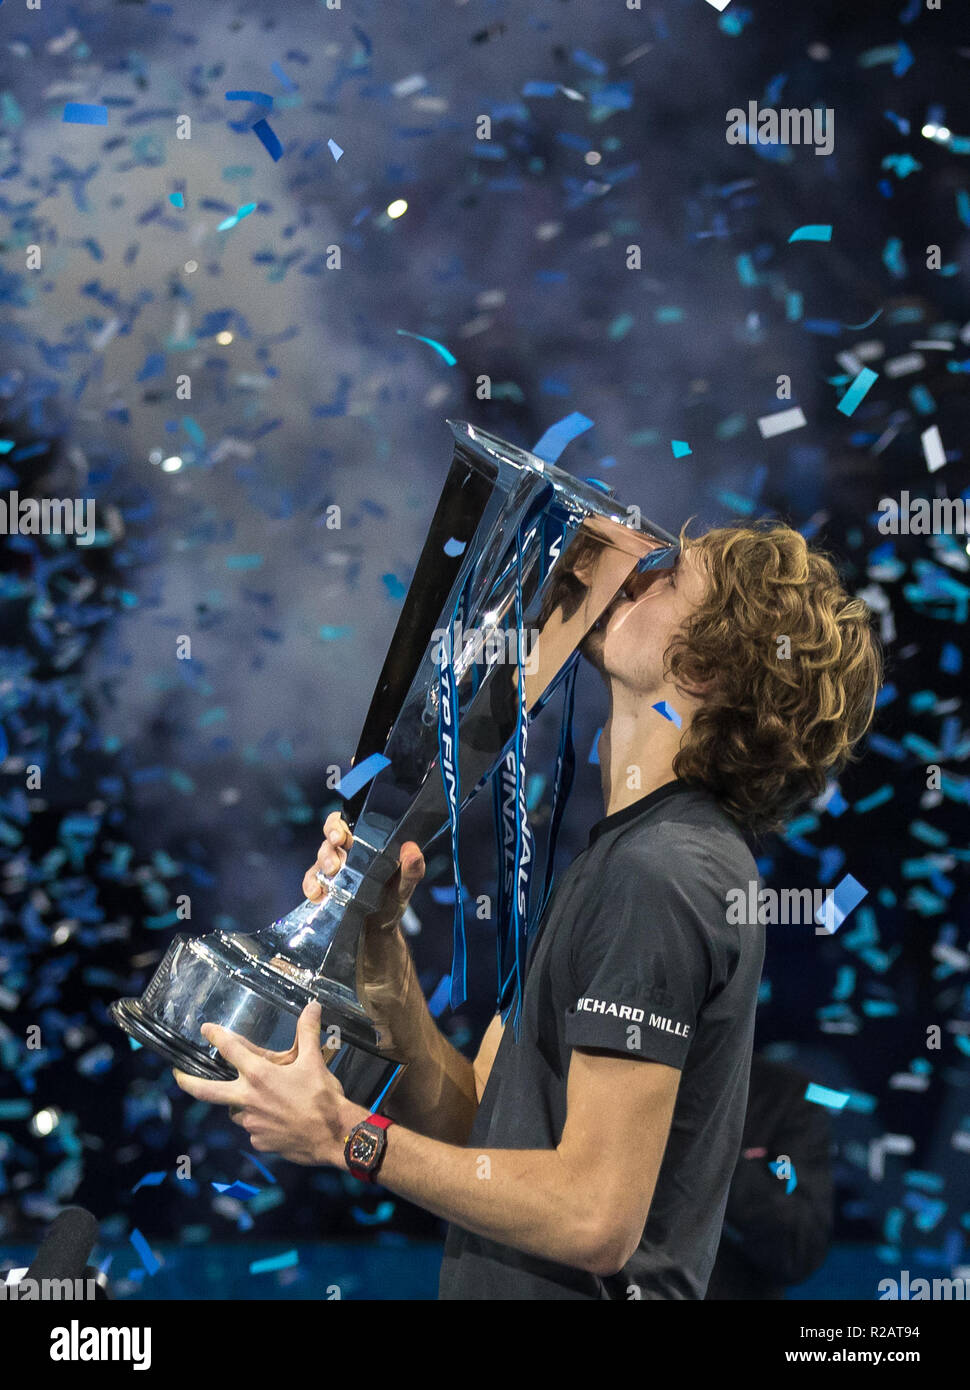 Alexander Zverev (Germania) vince la fine dell'anno finali e pone con il trofeo durante il Nitto ATP Finals London 2018 all'O2, Londra, Inghilterra il 18 novembre 2018. Foto di Andy Rowland. Foto Stock